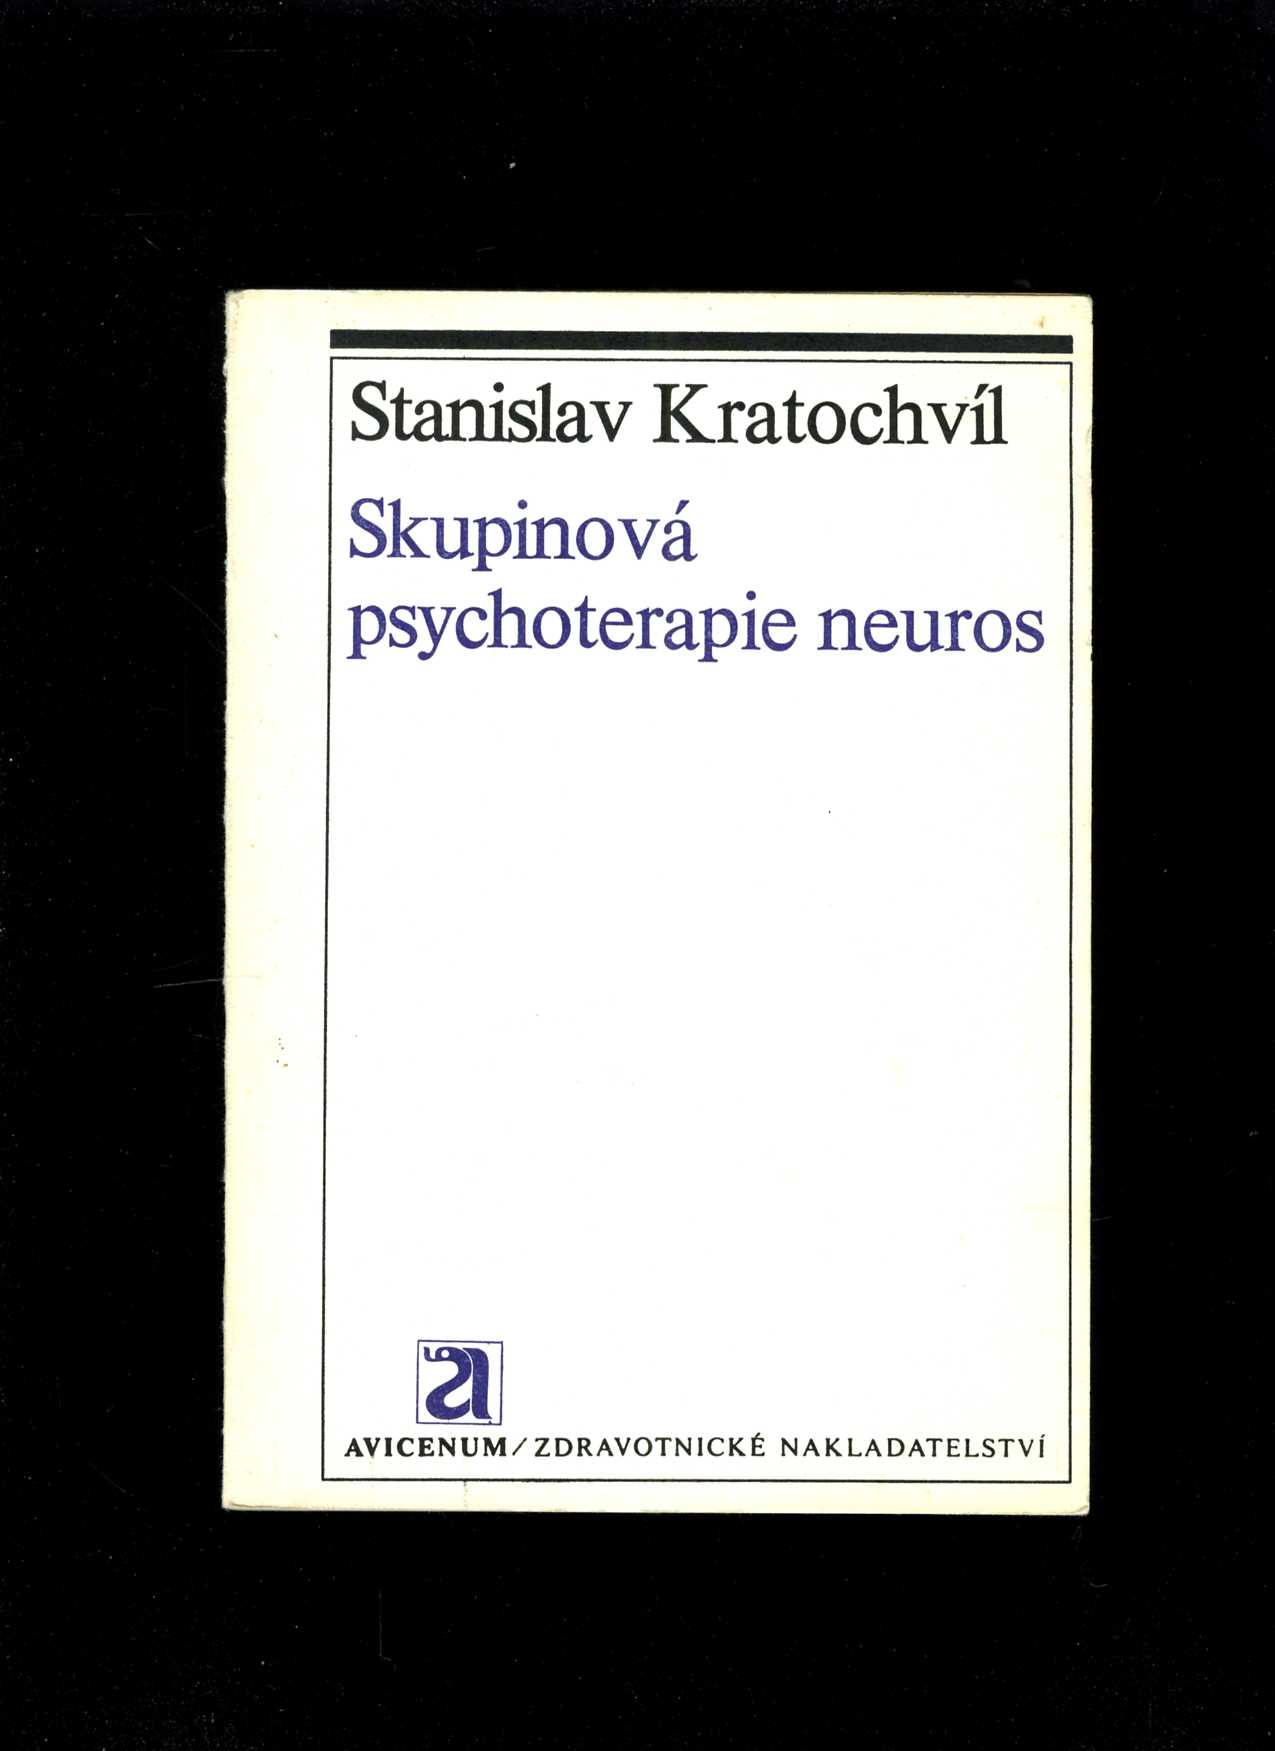 Skupinová psychoterapie neuros (Stanislav Kratochvíl)